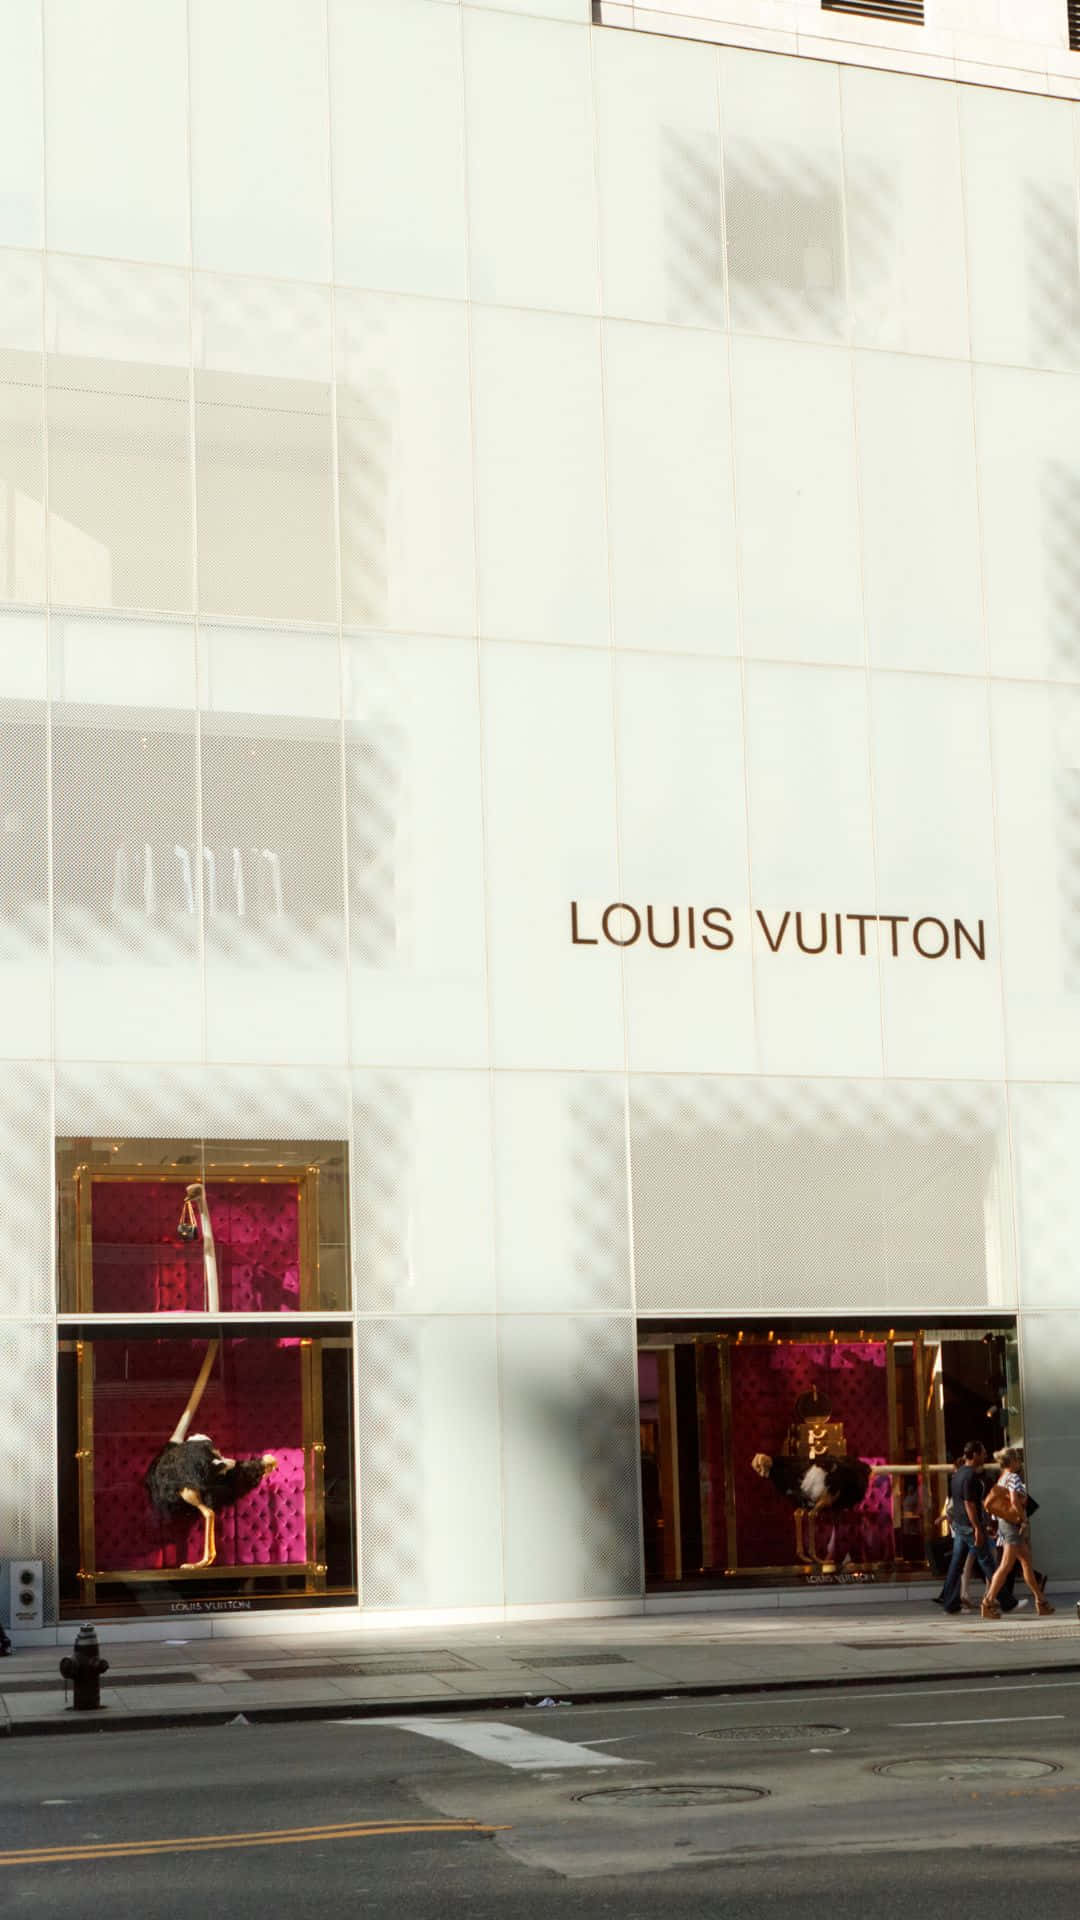 Machensie Eine Stilvolle Aussage Mit Diesem Glamourösen Louis Vuitton Iphone. Wallpaper